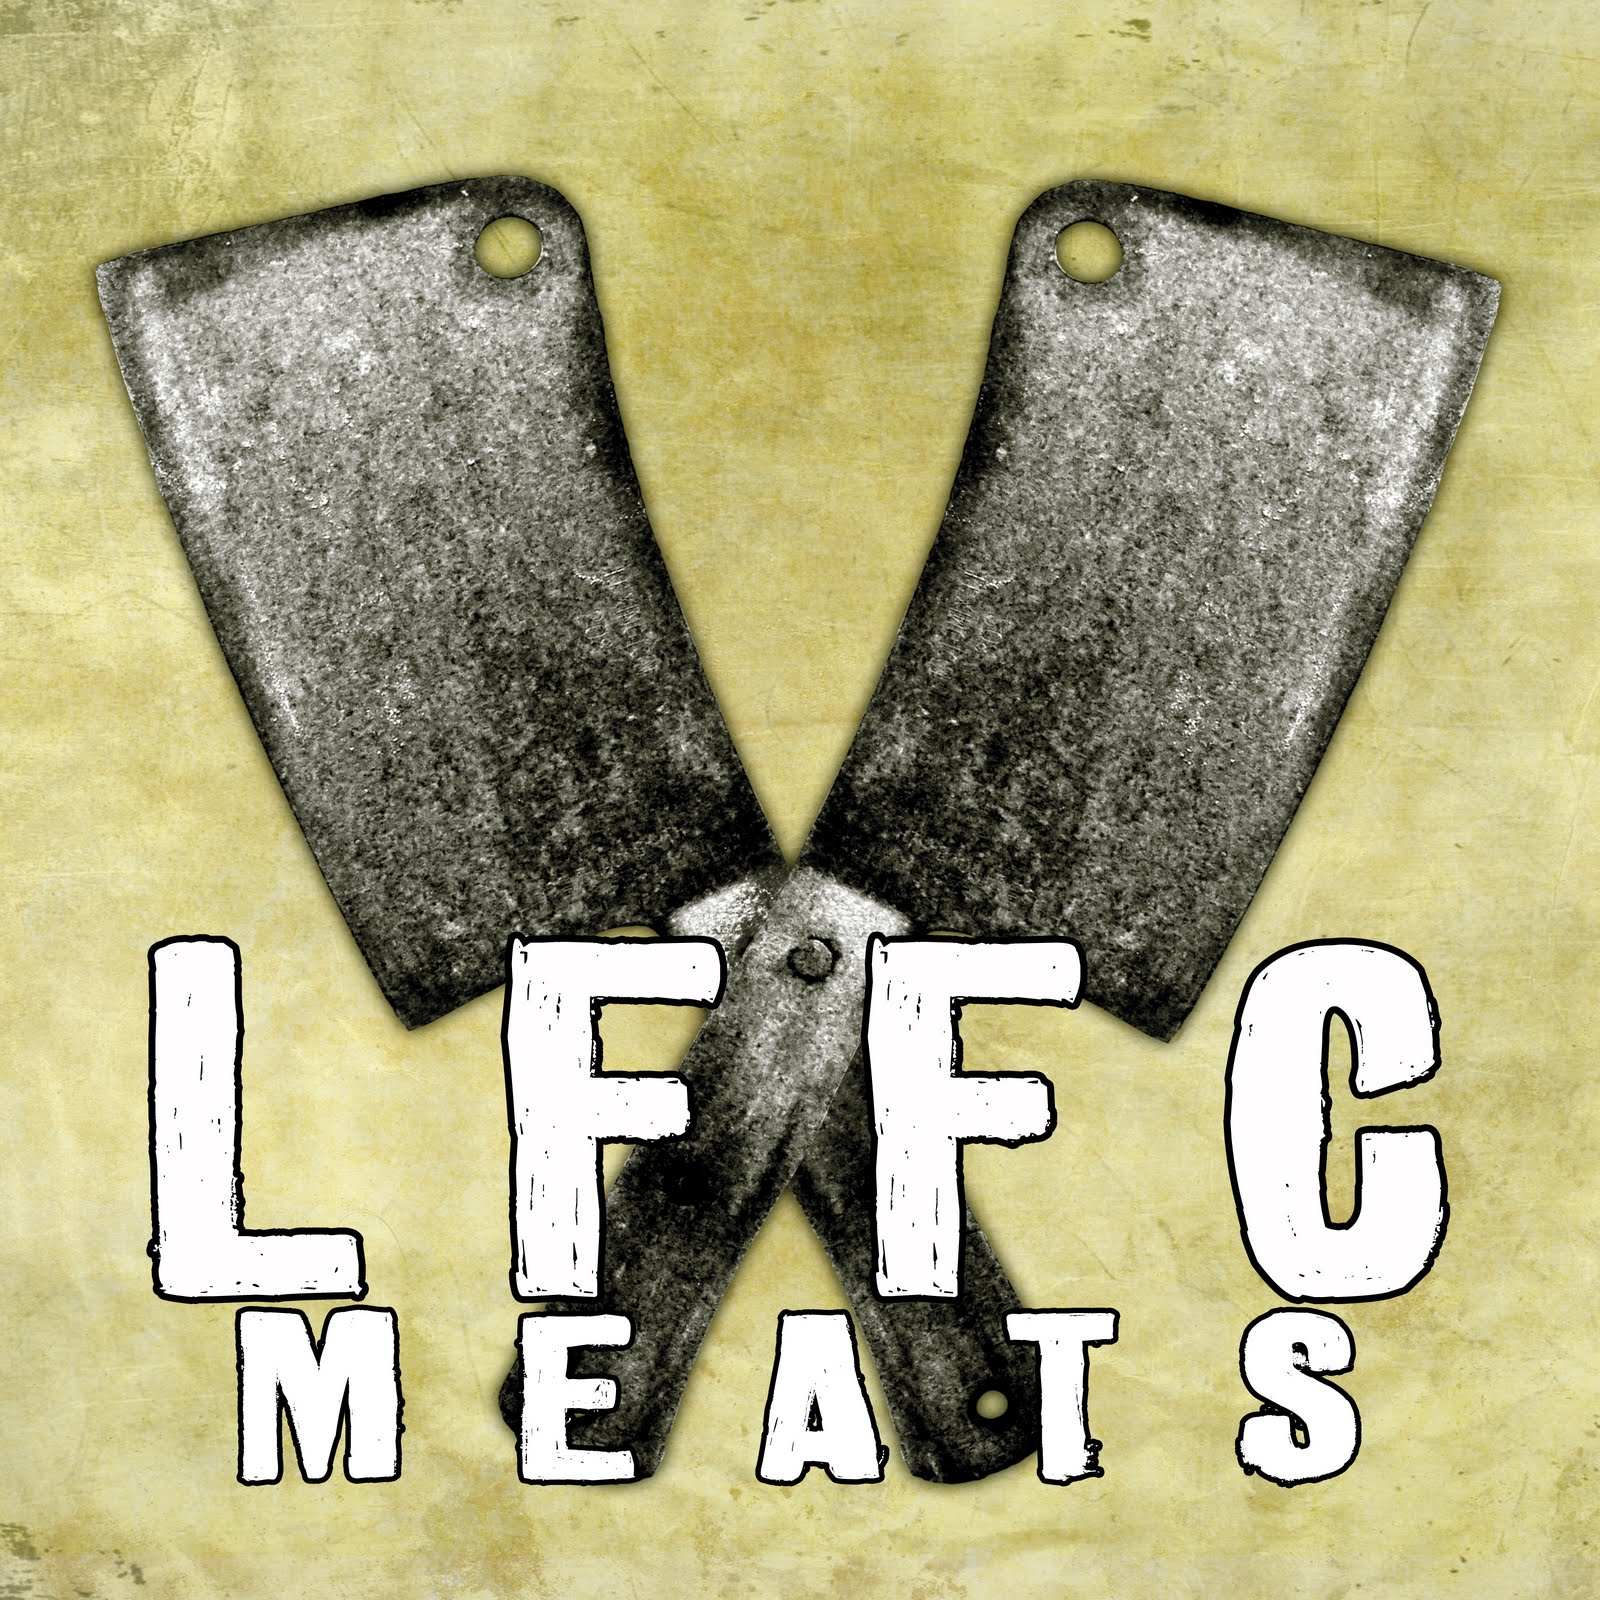 LFFC meats